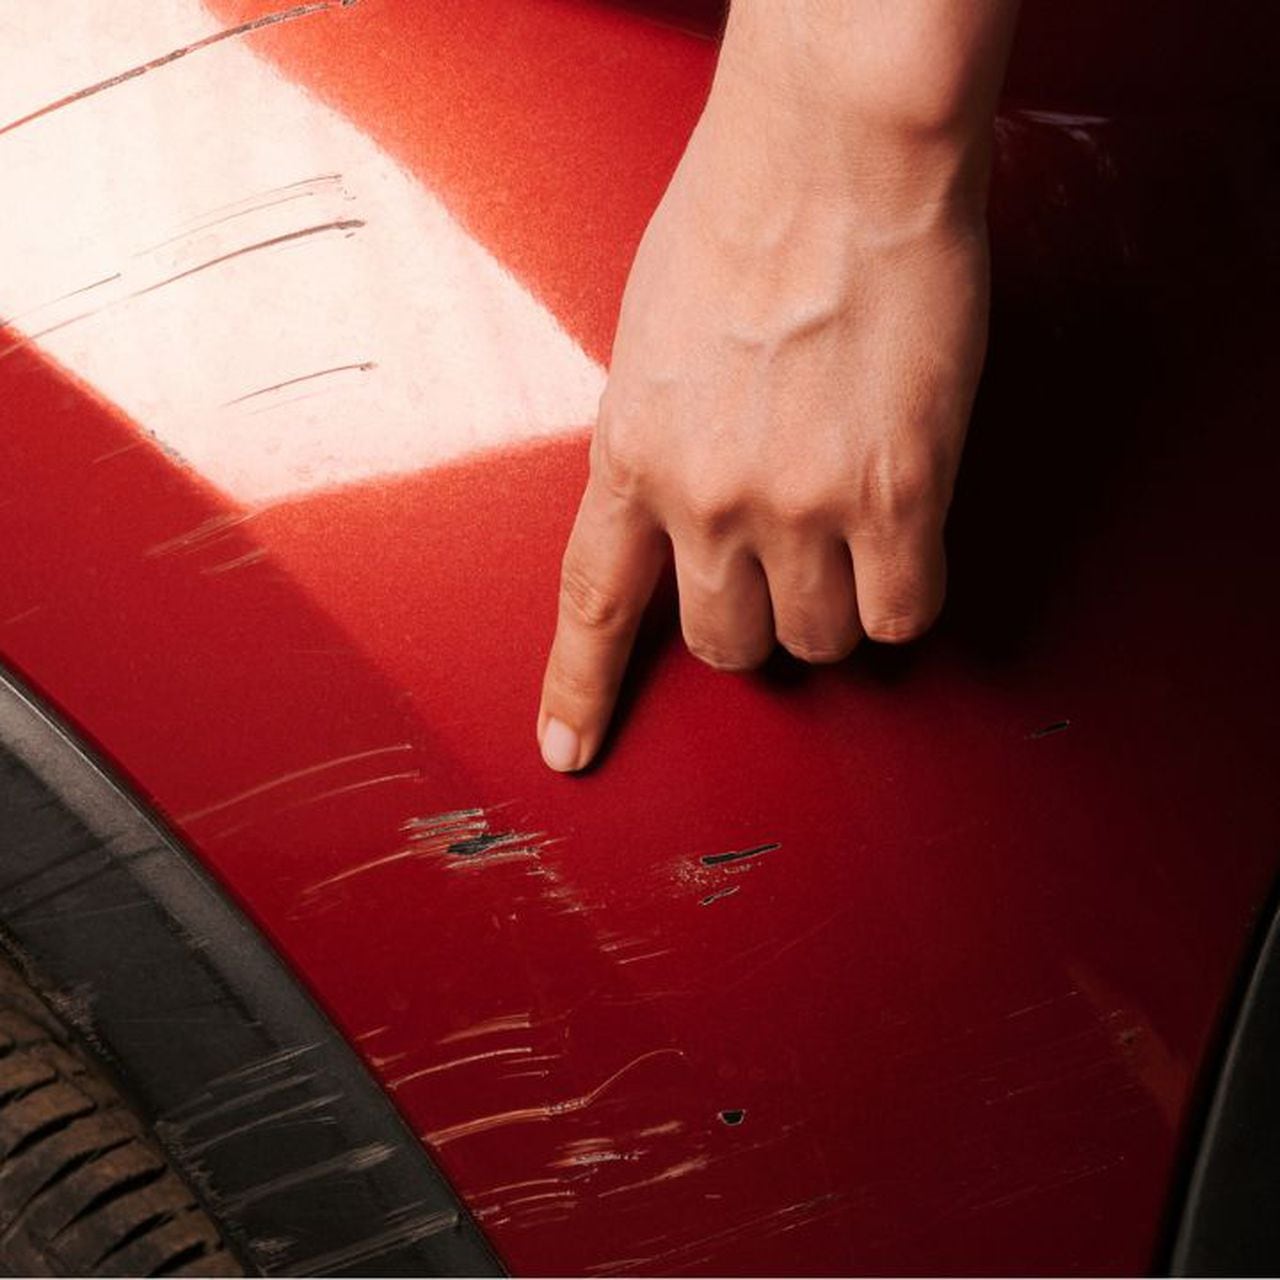 Cómo quitar los rayones de tu auto?